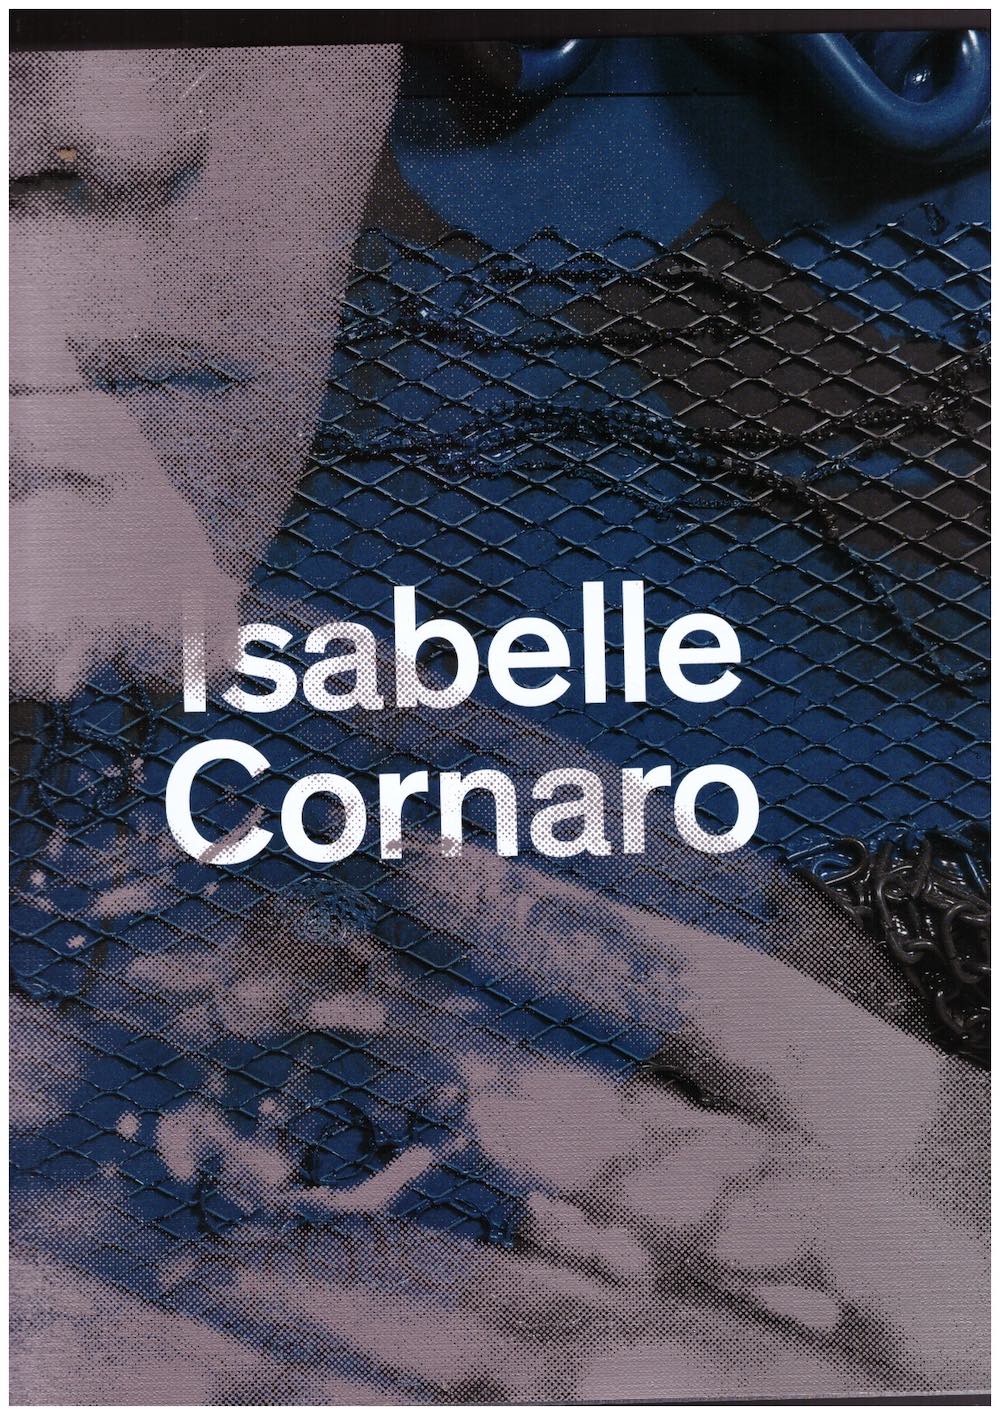 CORNARO, Isabelle: DIRIÉ, Clément (ed.) - Isabelle Cornaro [Édition française]